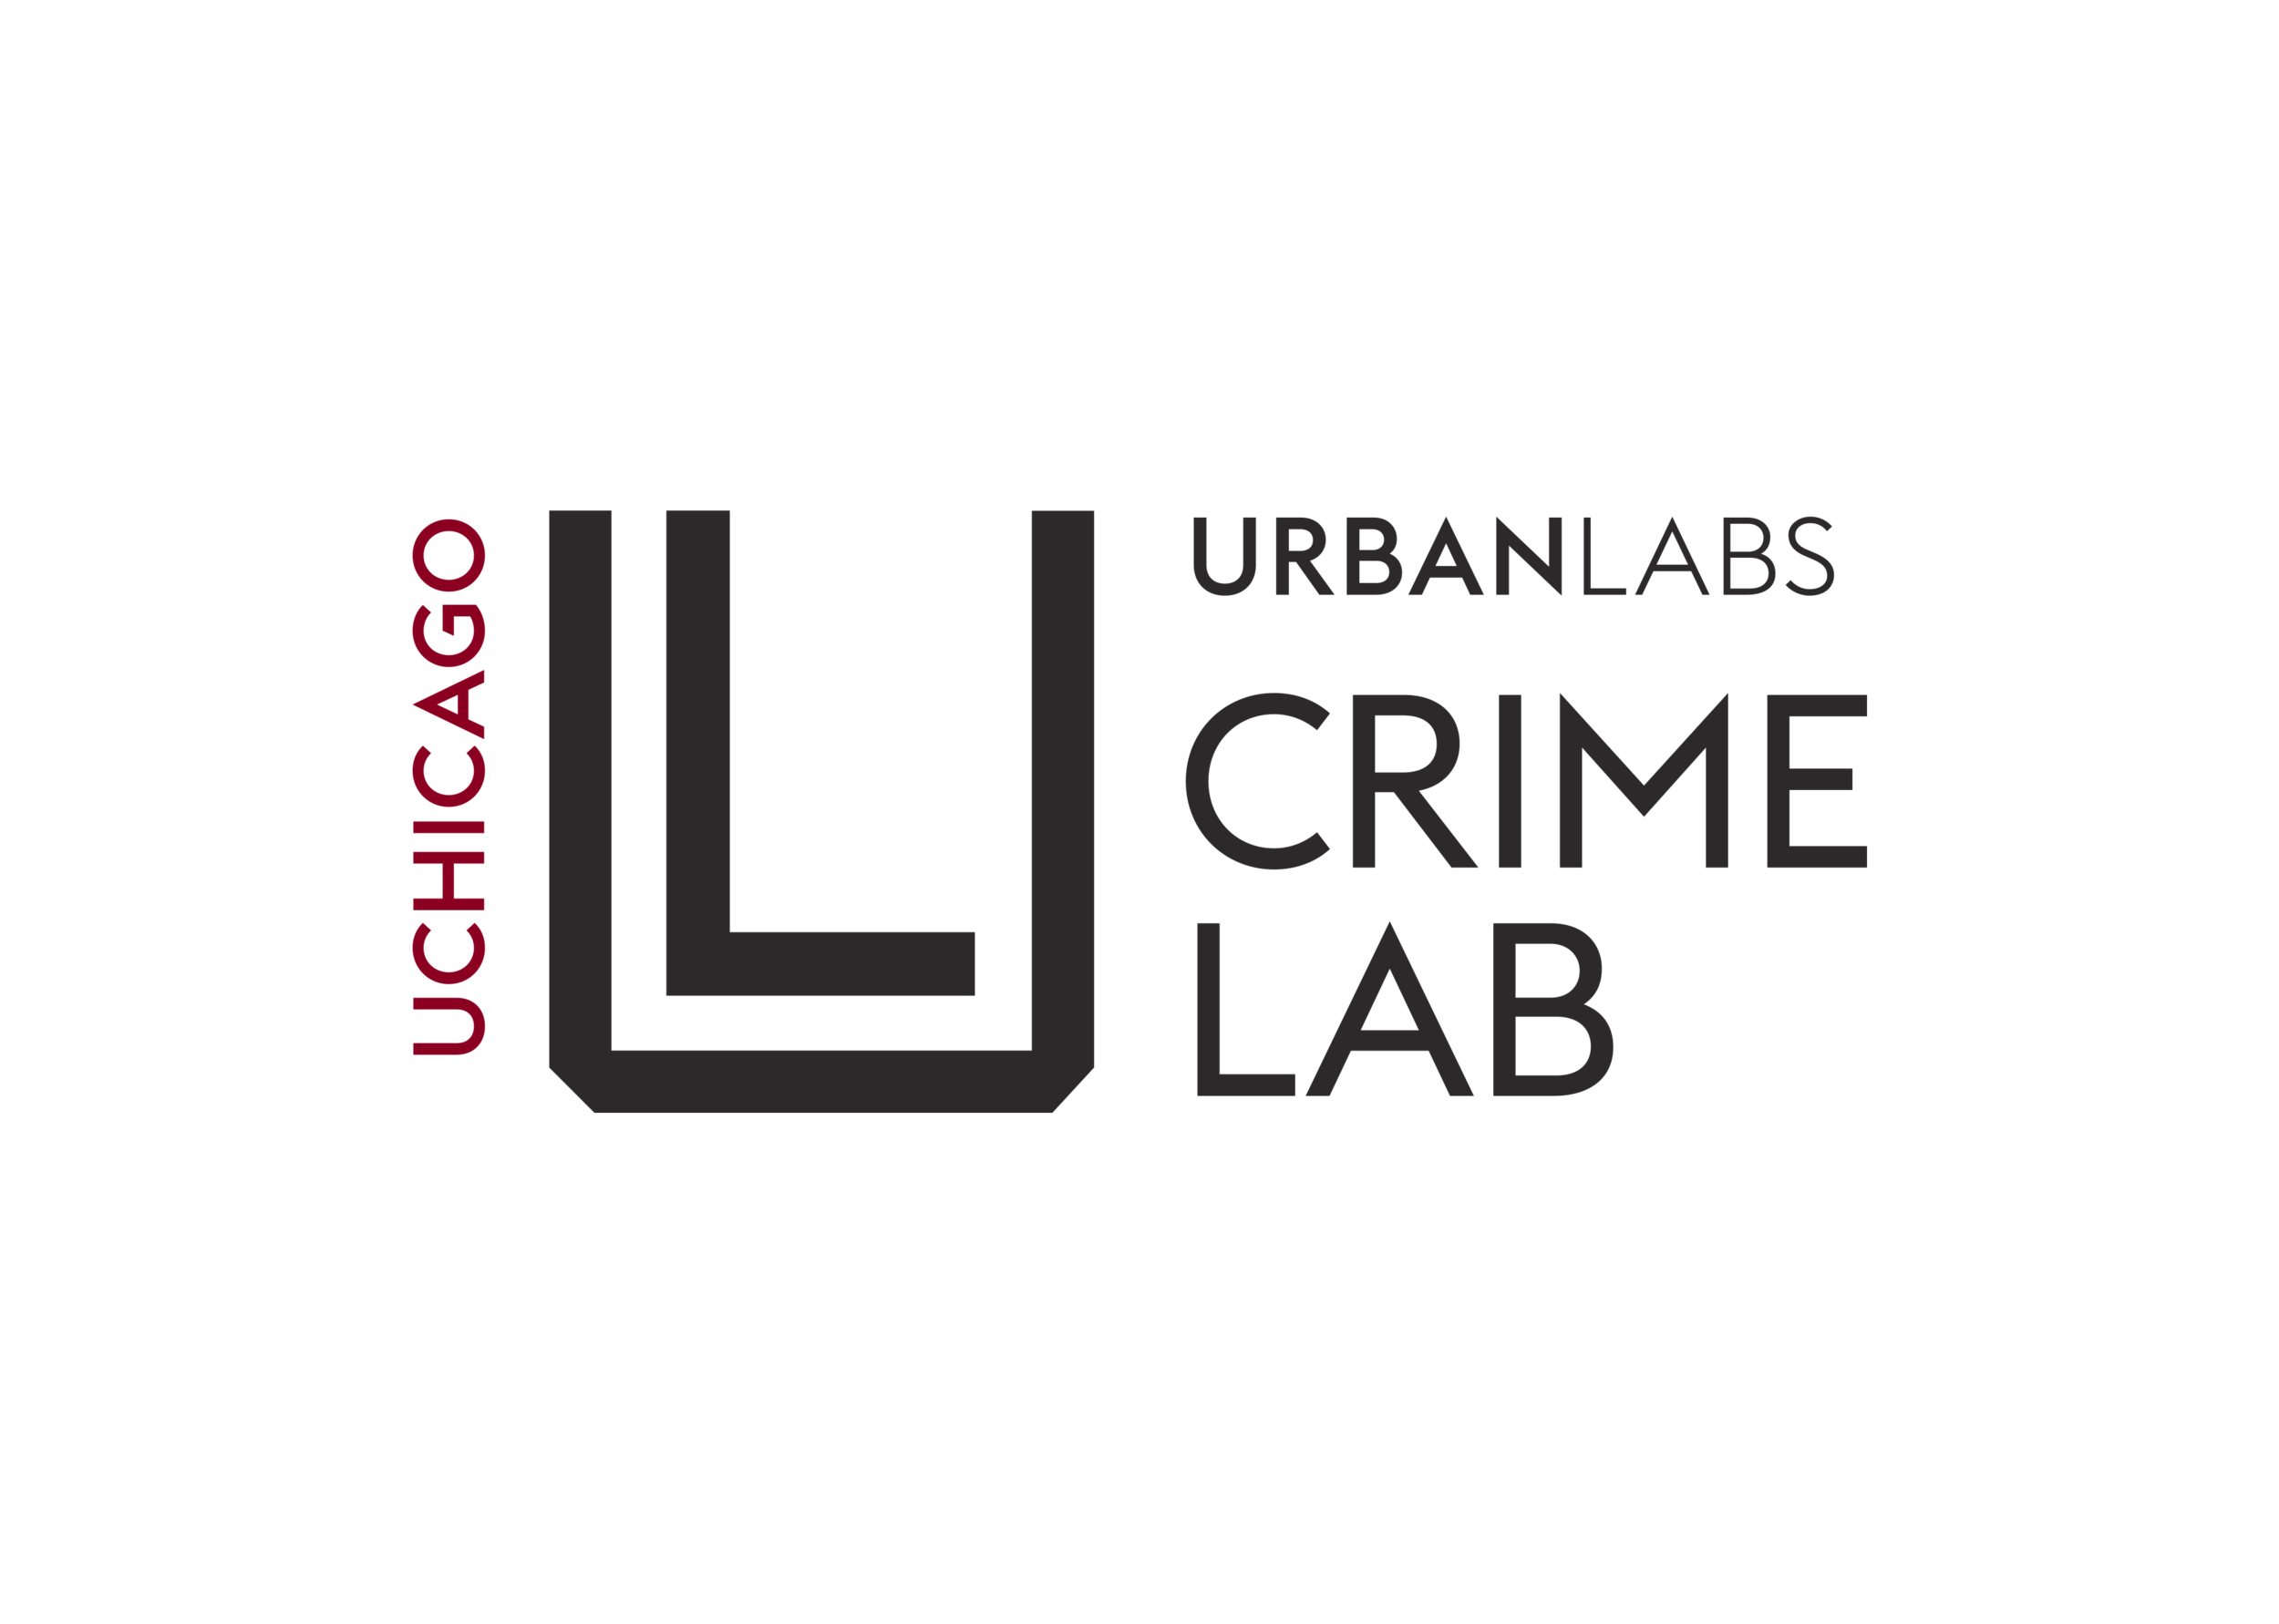 3.2_UrbanLabs_Crime_Maroon.png